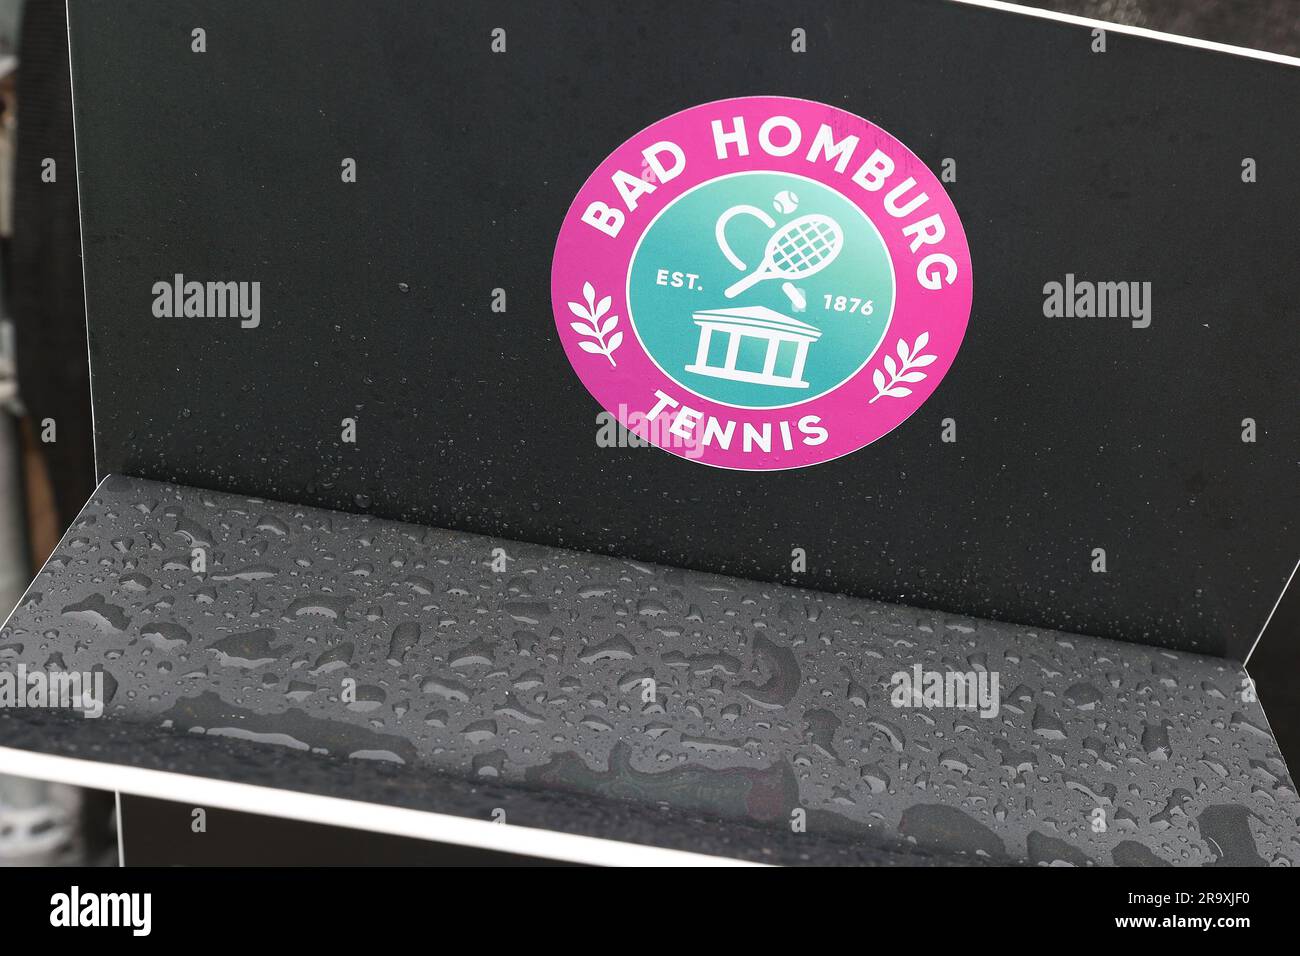 Bad Homburg, Germania. 29 giugno 2023. Tennis: WTA Tour, singoli, donne, quarti di finale Rebeka Masarova (SPA) - Emma Navarro (USA). Il logo del Tennis Club Bad Homburg è visibile durante un'interruzione della pioggia. Credito: Joaquim Ferreira/dpa/Alamy Live News Foto Stock